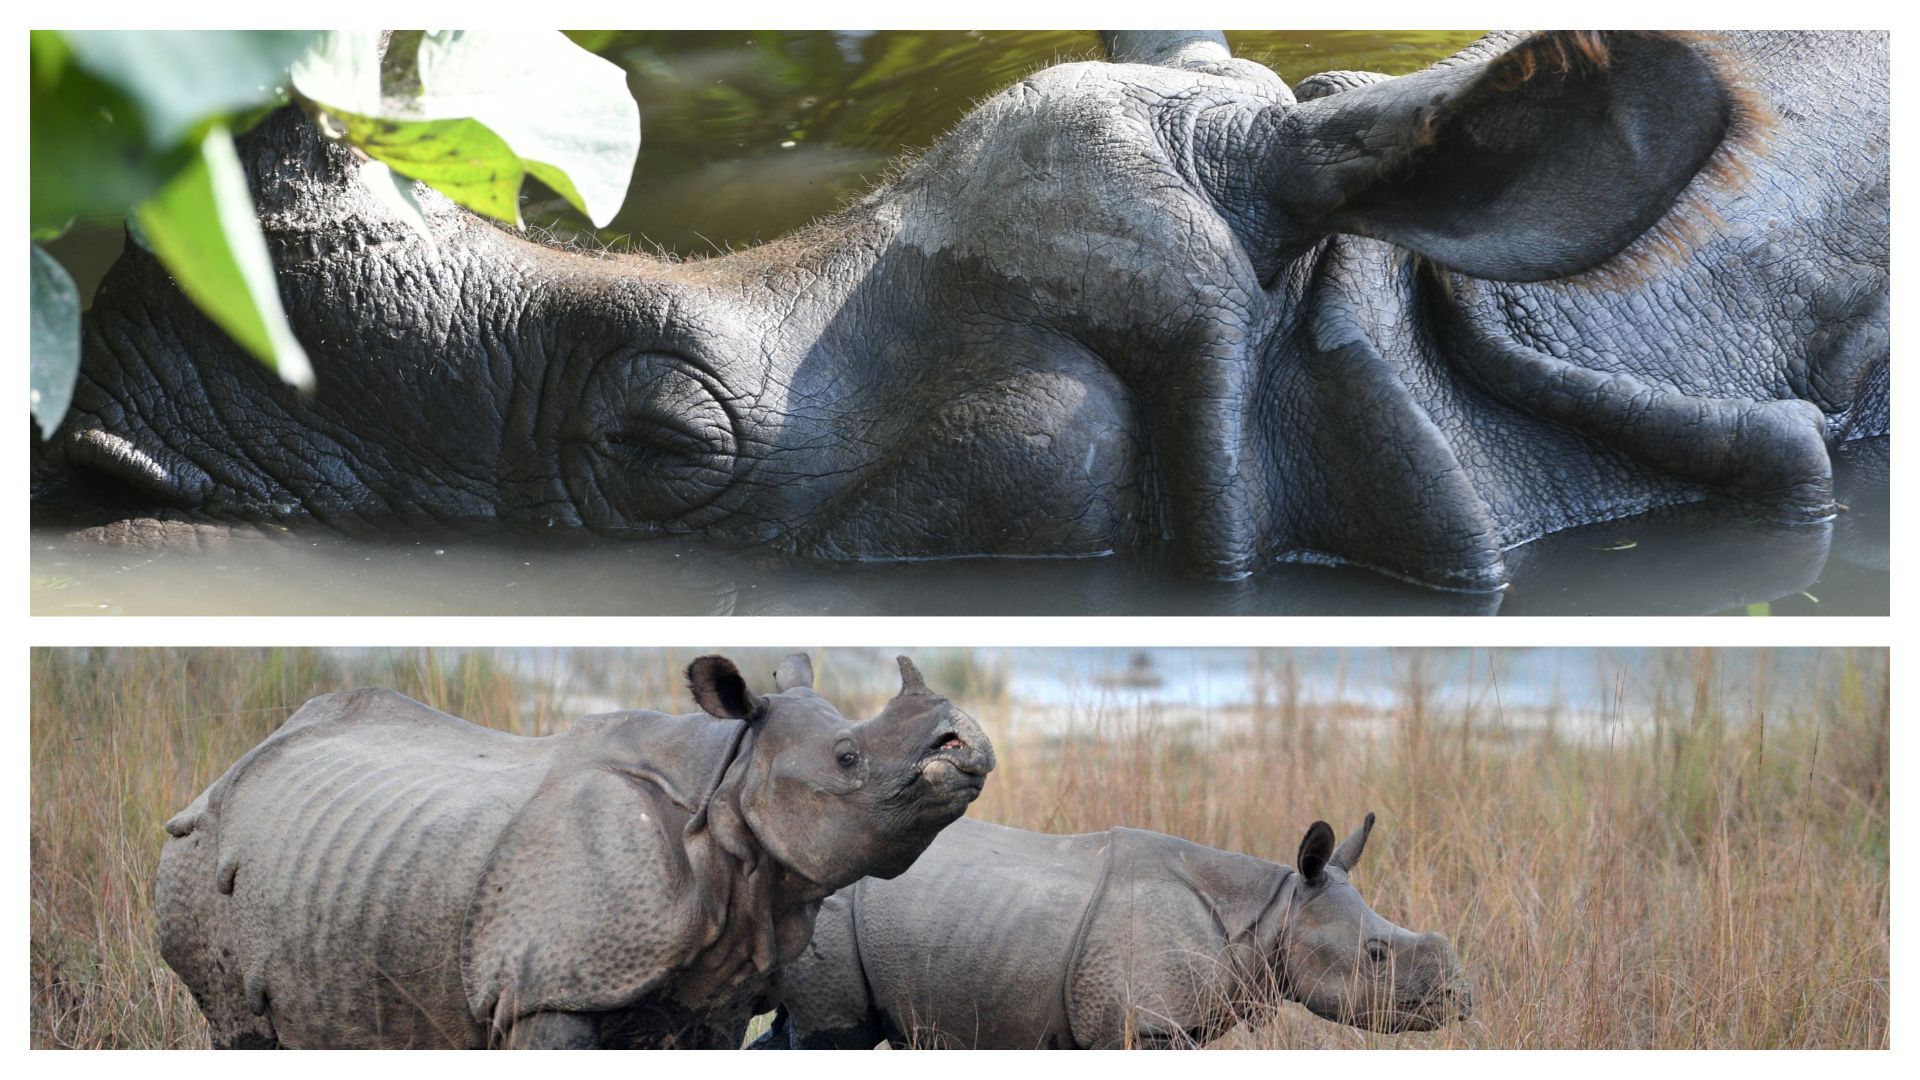 La population de rhinocéros au Népal a augmenté de plus de 100 individus au cours des six dernières années